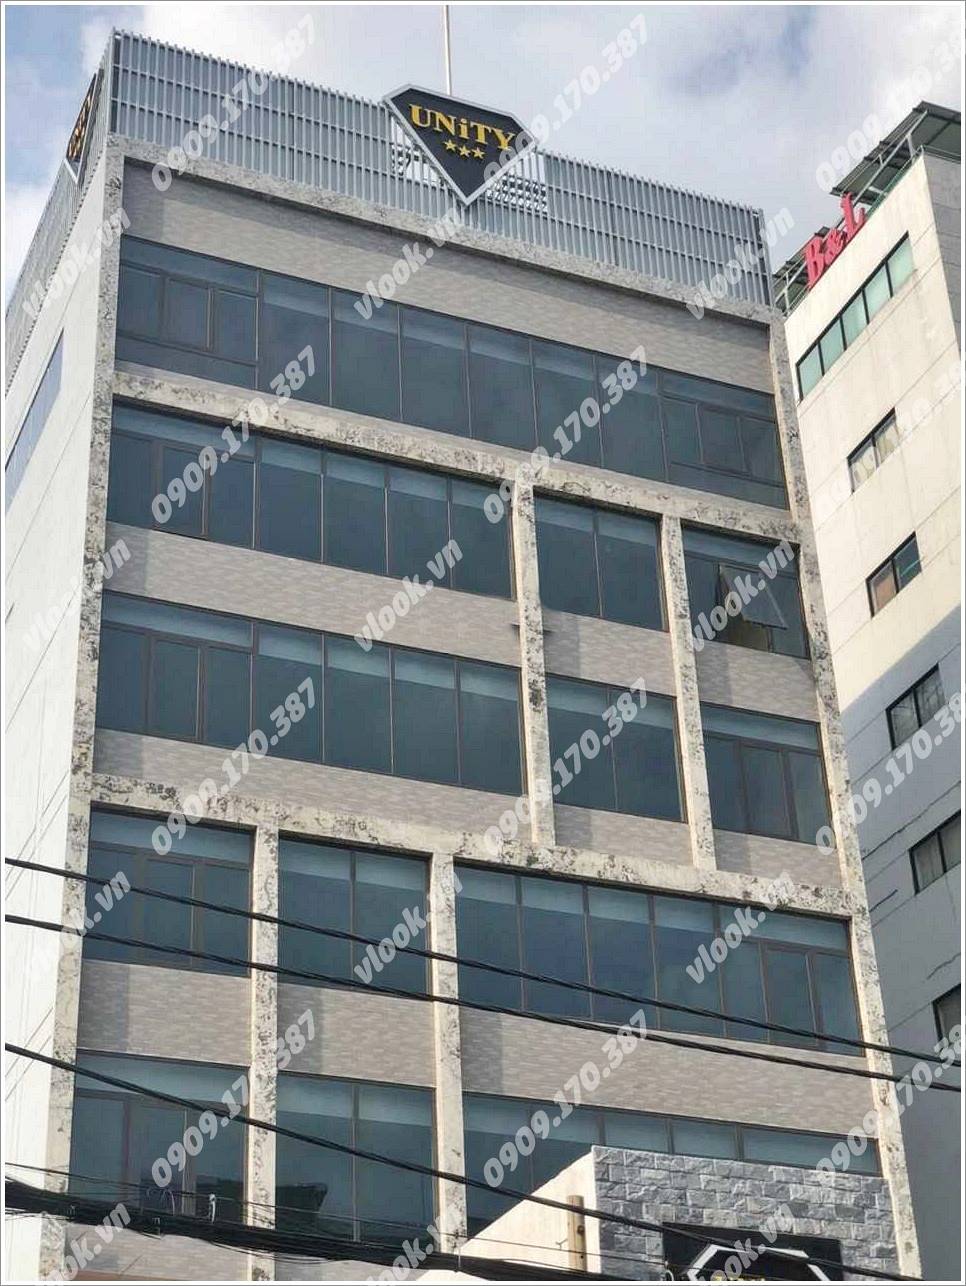 Cao ốc cho thuê văn phòng Unity Building, Ung Văn Khiêm, Quận Bình Thạnh - vlook.vn